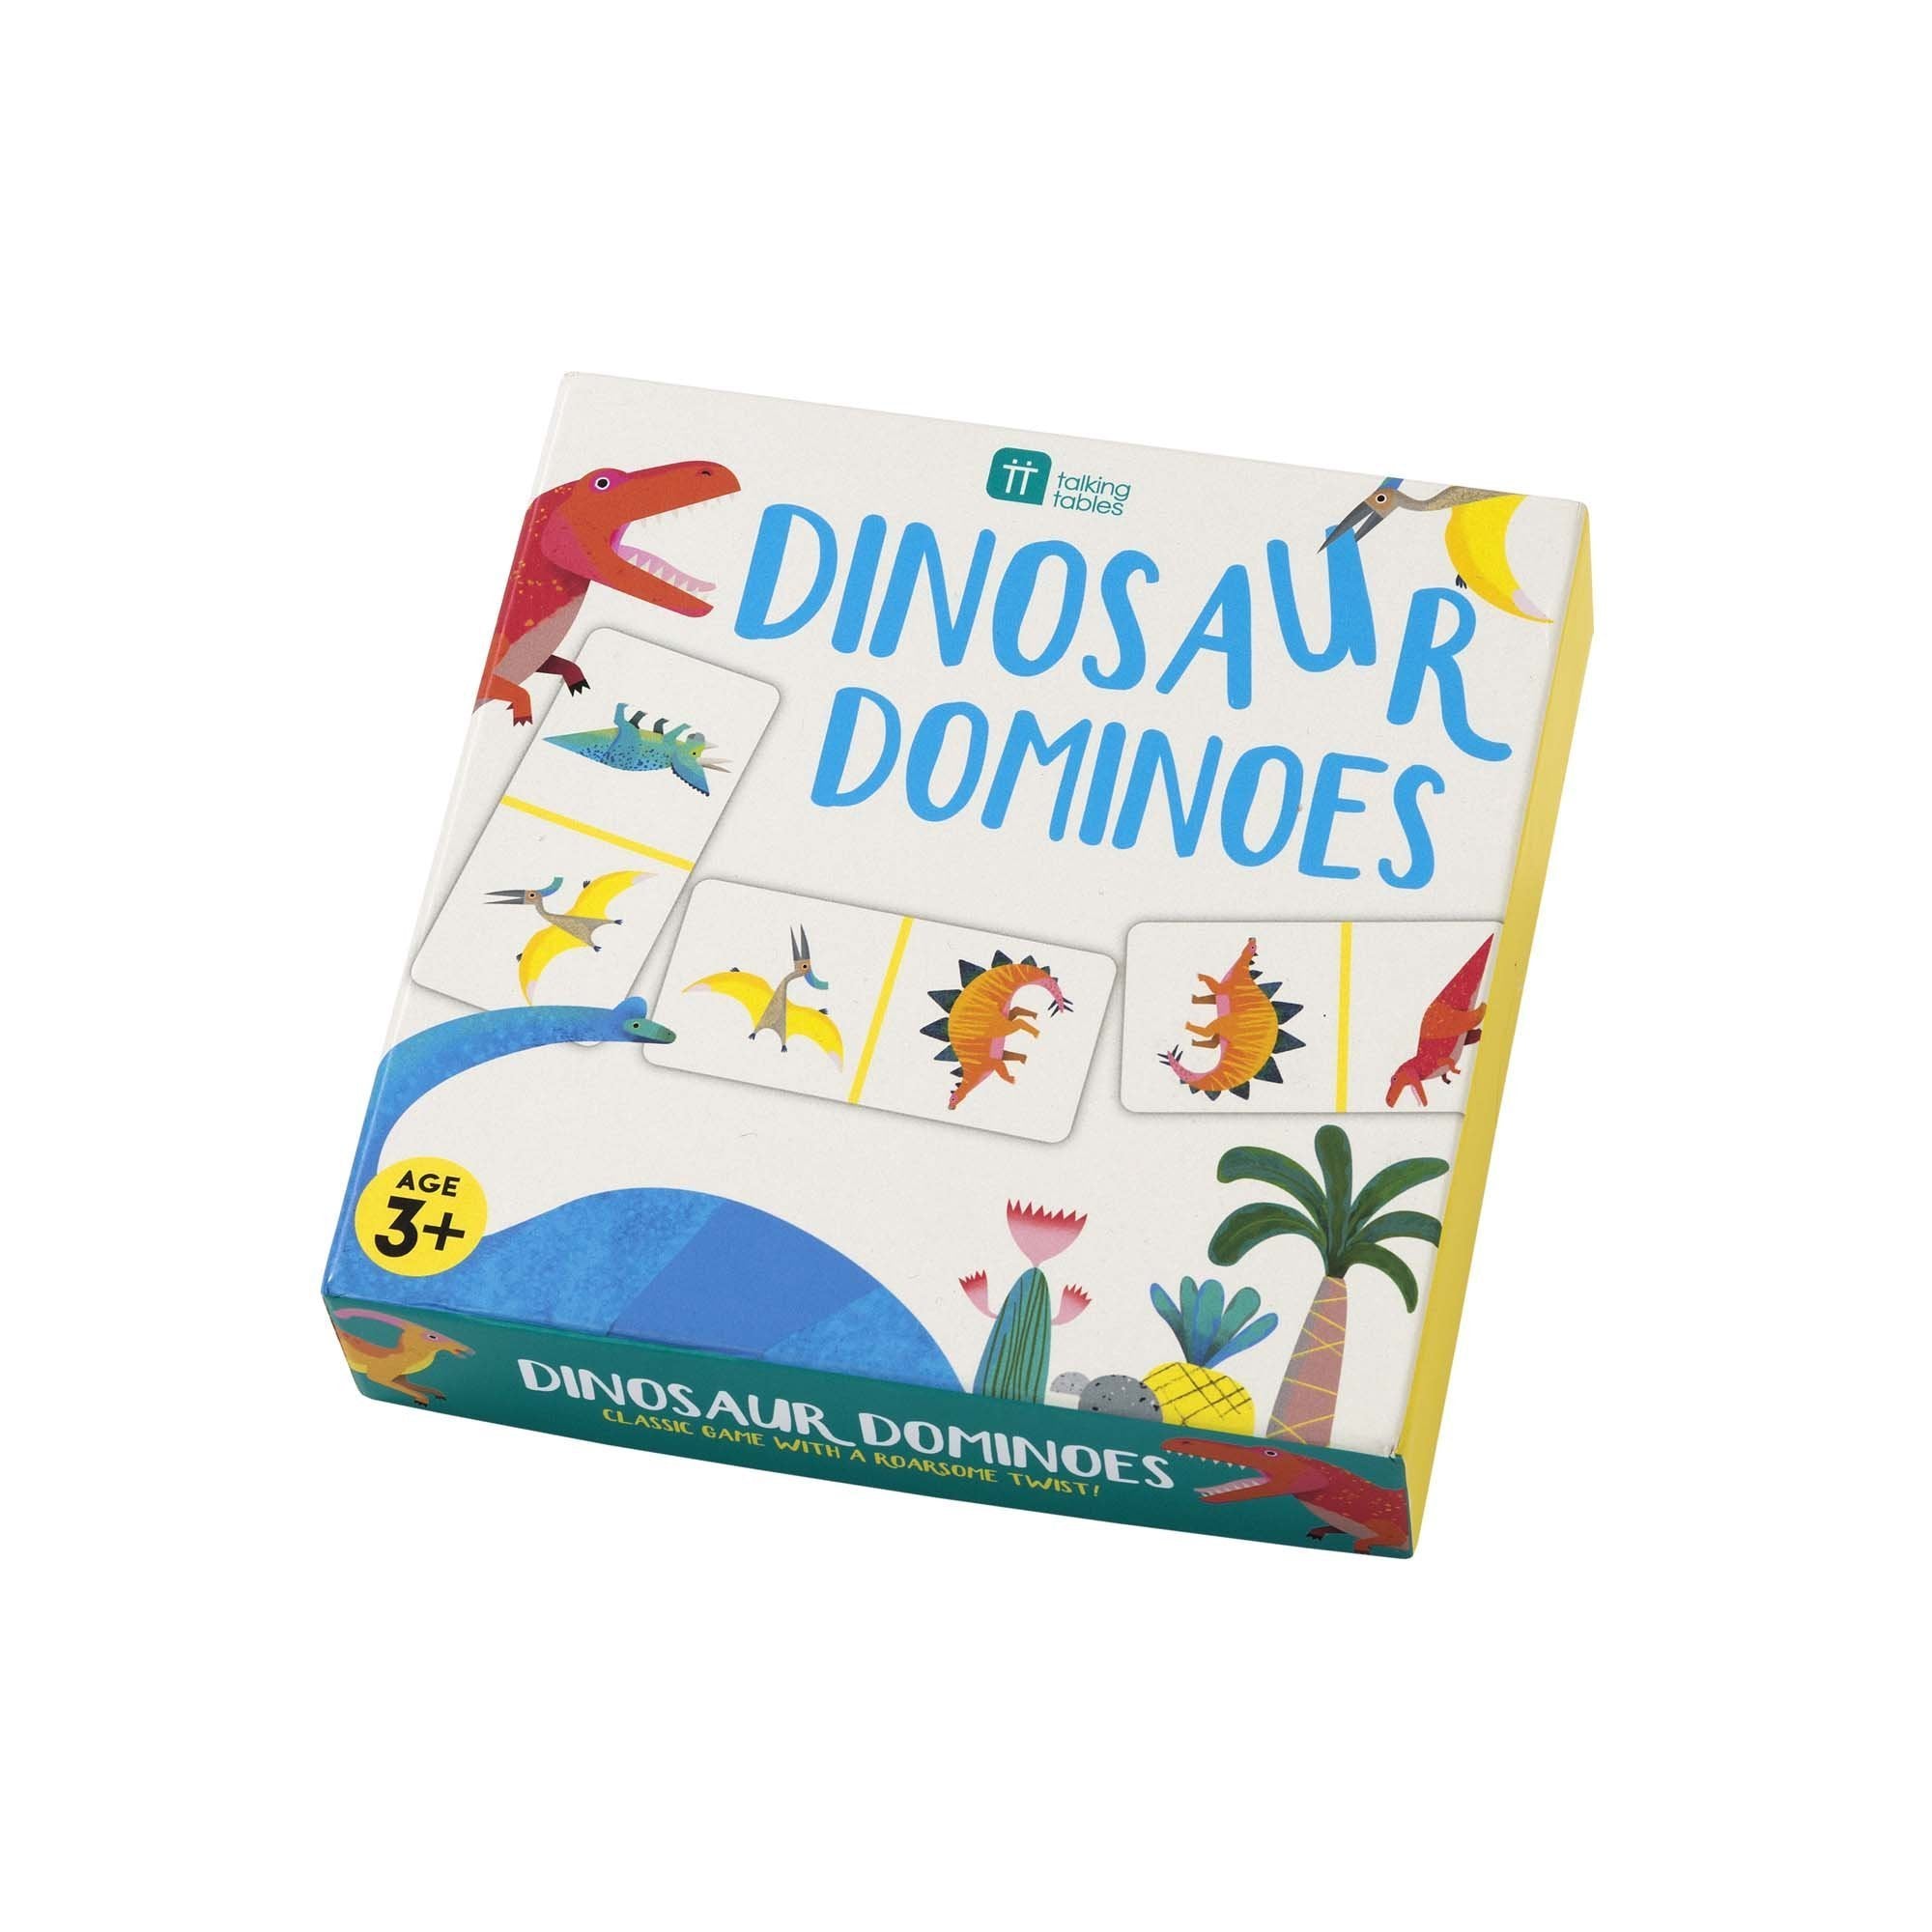 Children's Dinosaur Dominoes